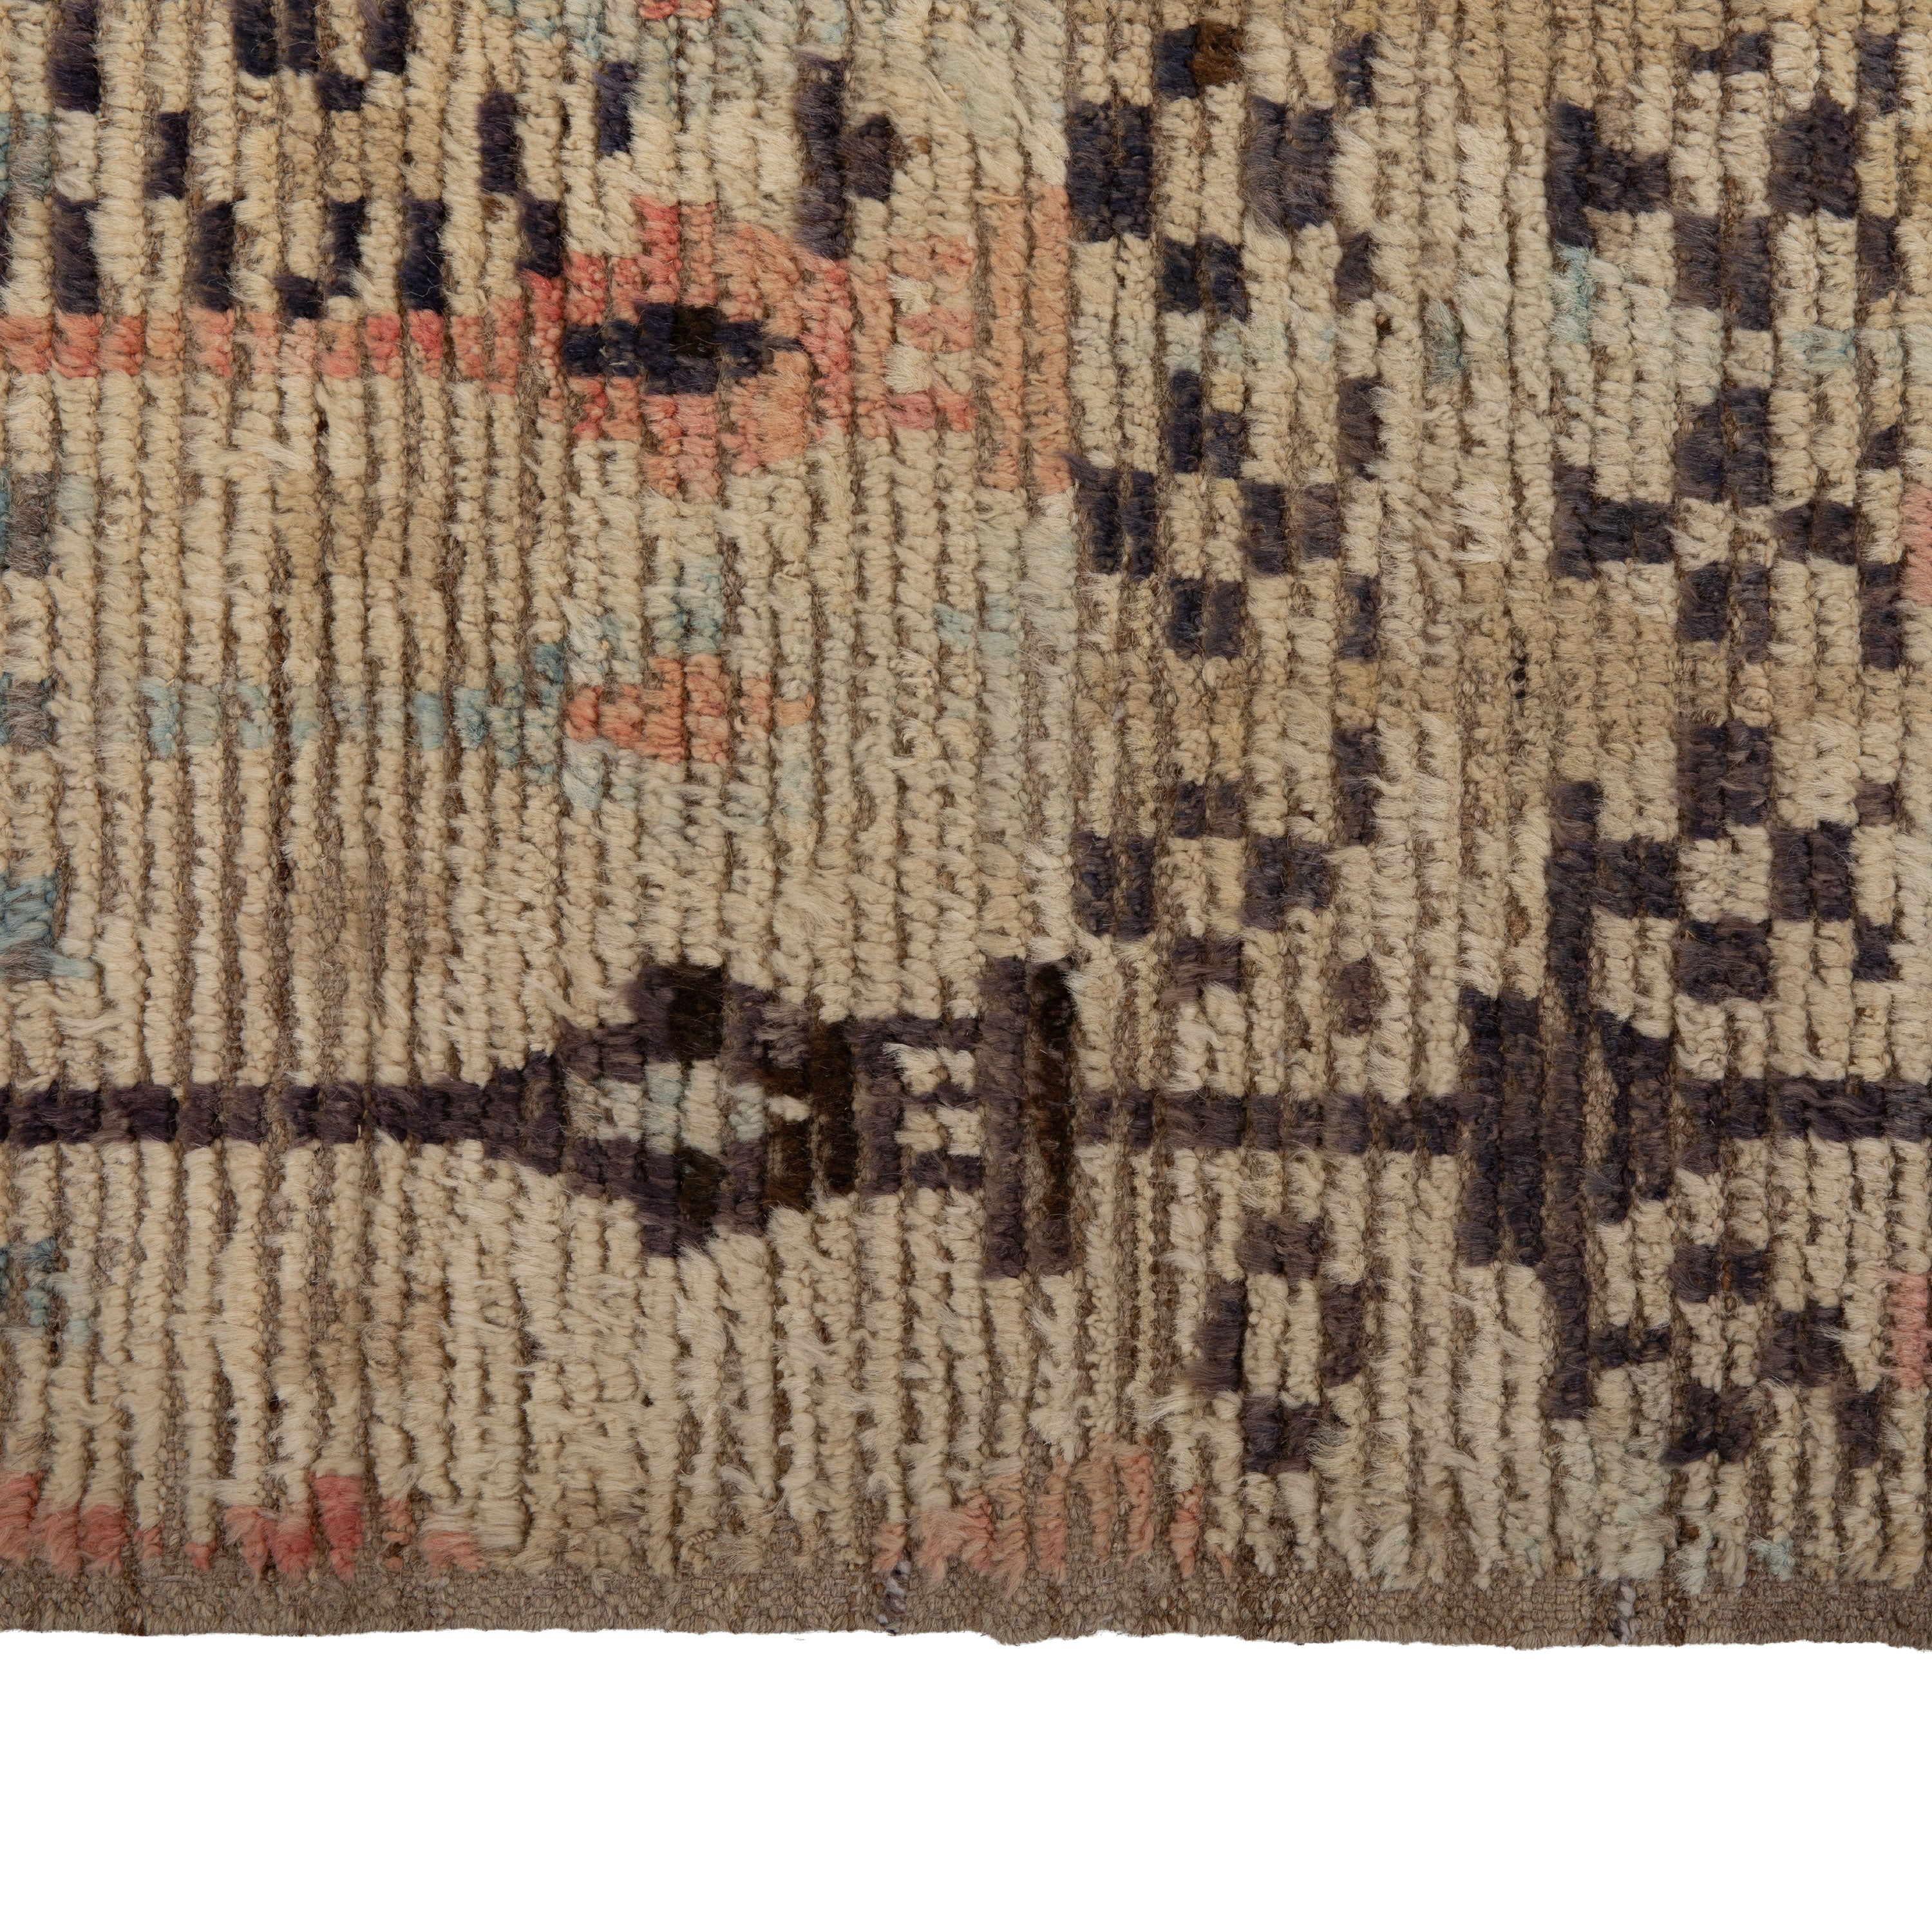 Zameen Patterned Modern Wool Rug - 3'4" x 9'6"